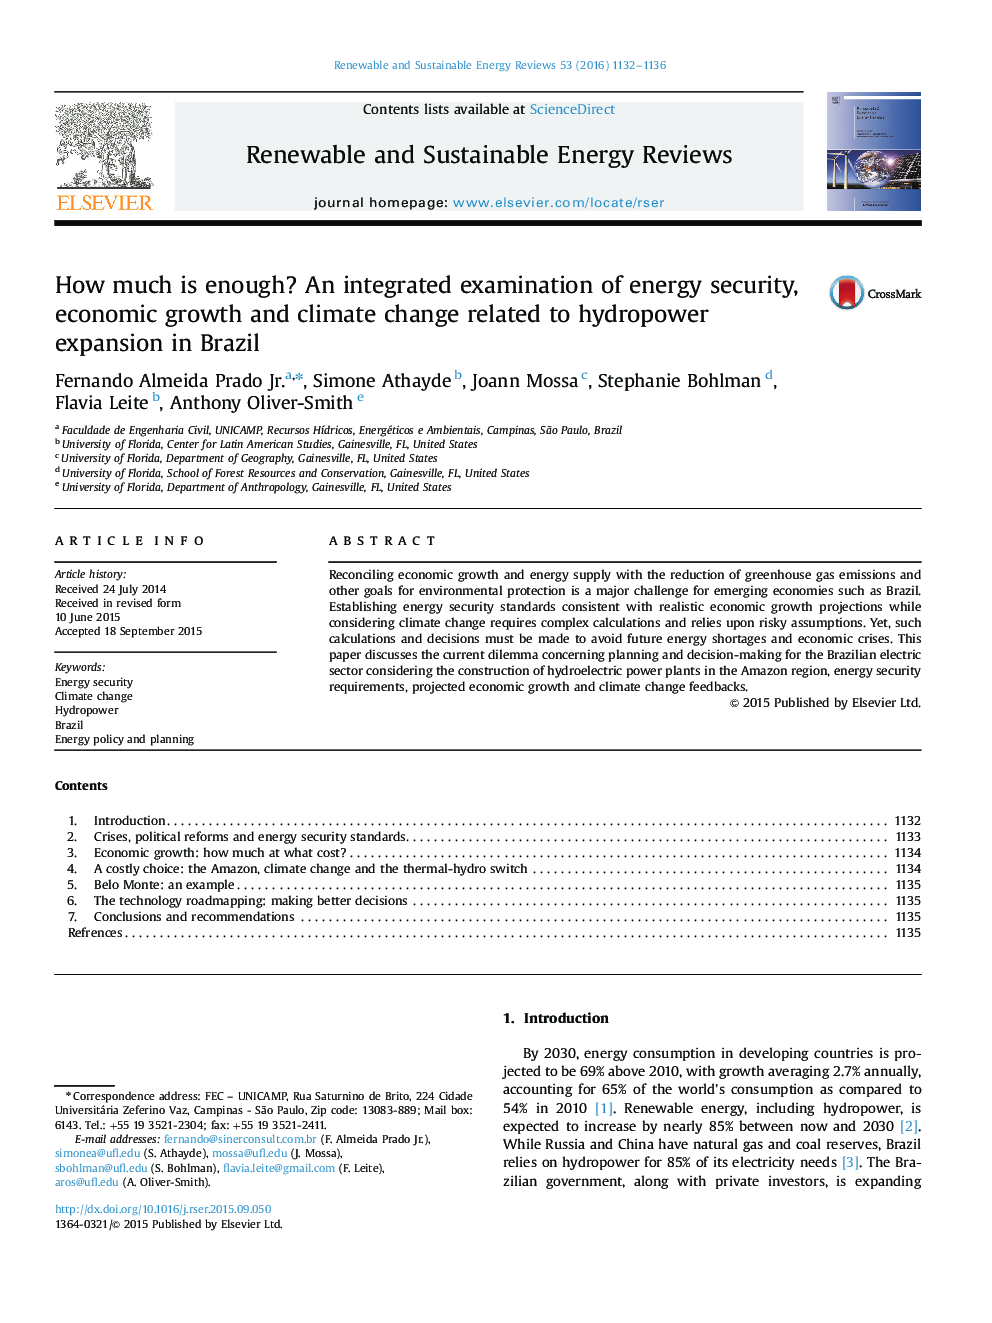 چقدر کافی است؟ بررسی یکپارچه امنیت انرژی، رشد اقتصادی و تغییرات آب و هوایی مربوط به گسترش برق آبی در برزیل 